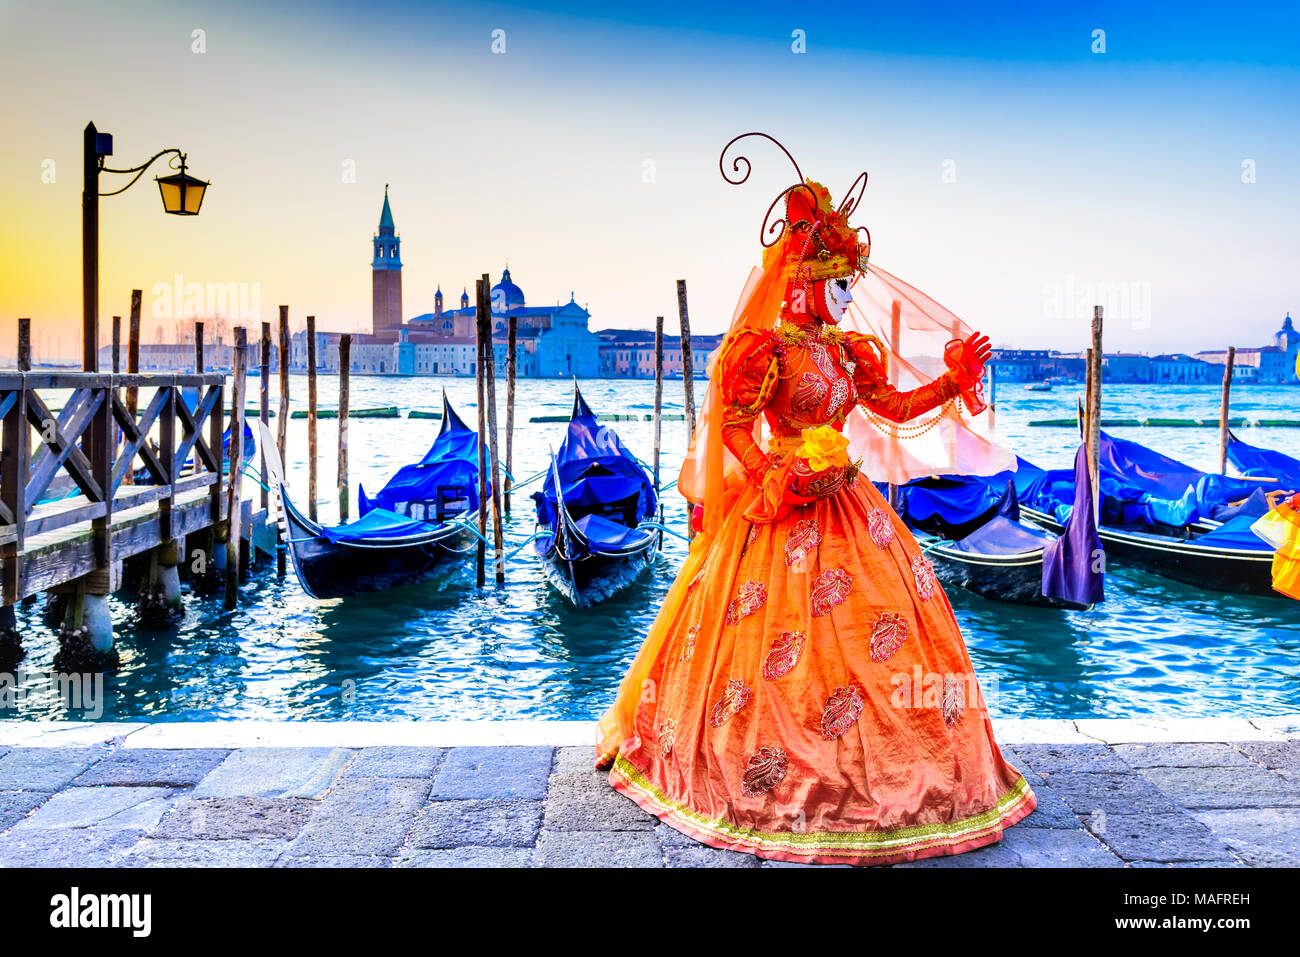 Venedig, Italien - 9. Februar 2018: Karneval in Venedig, wunderschöne Maske an der Piazza San Marco mit Gondeln und Grand Canal. Stockfoto